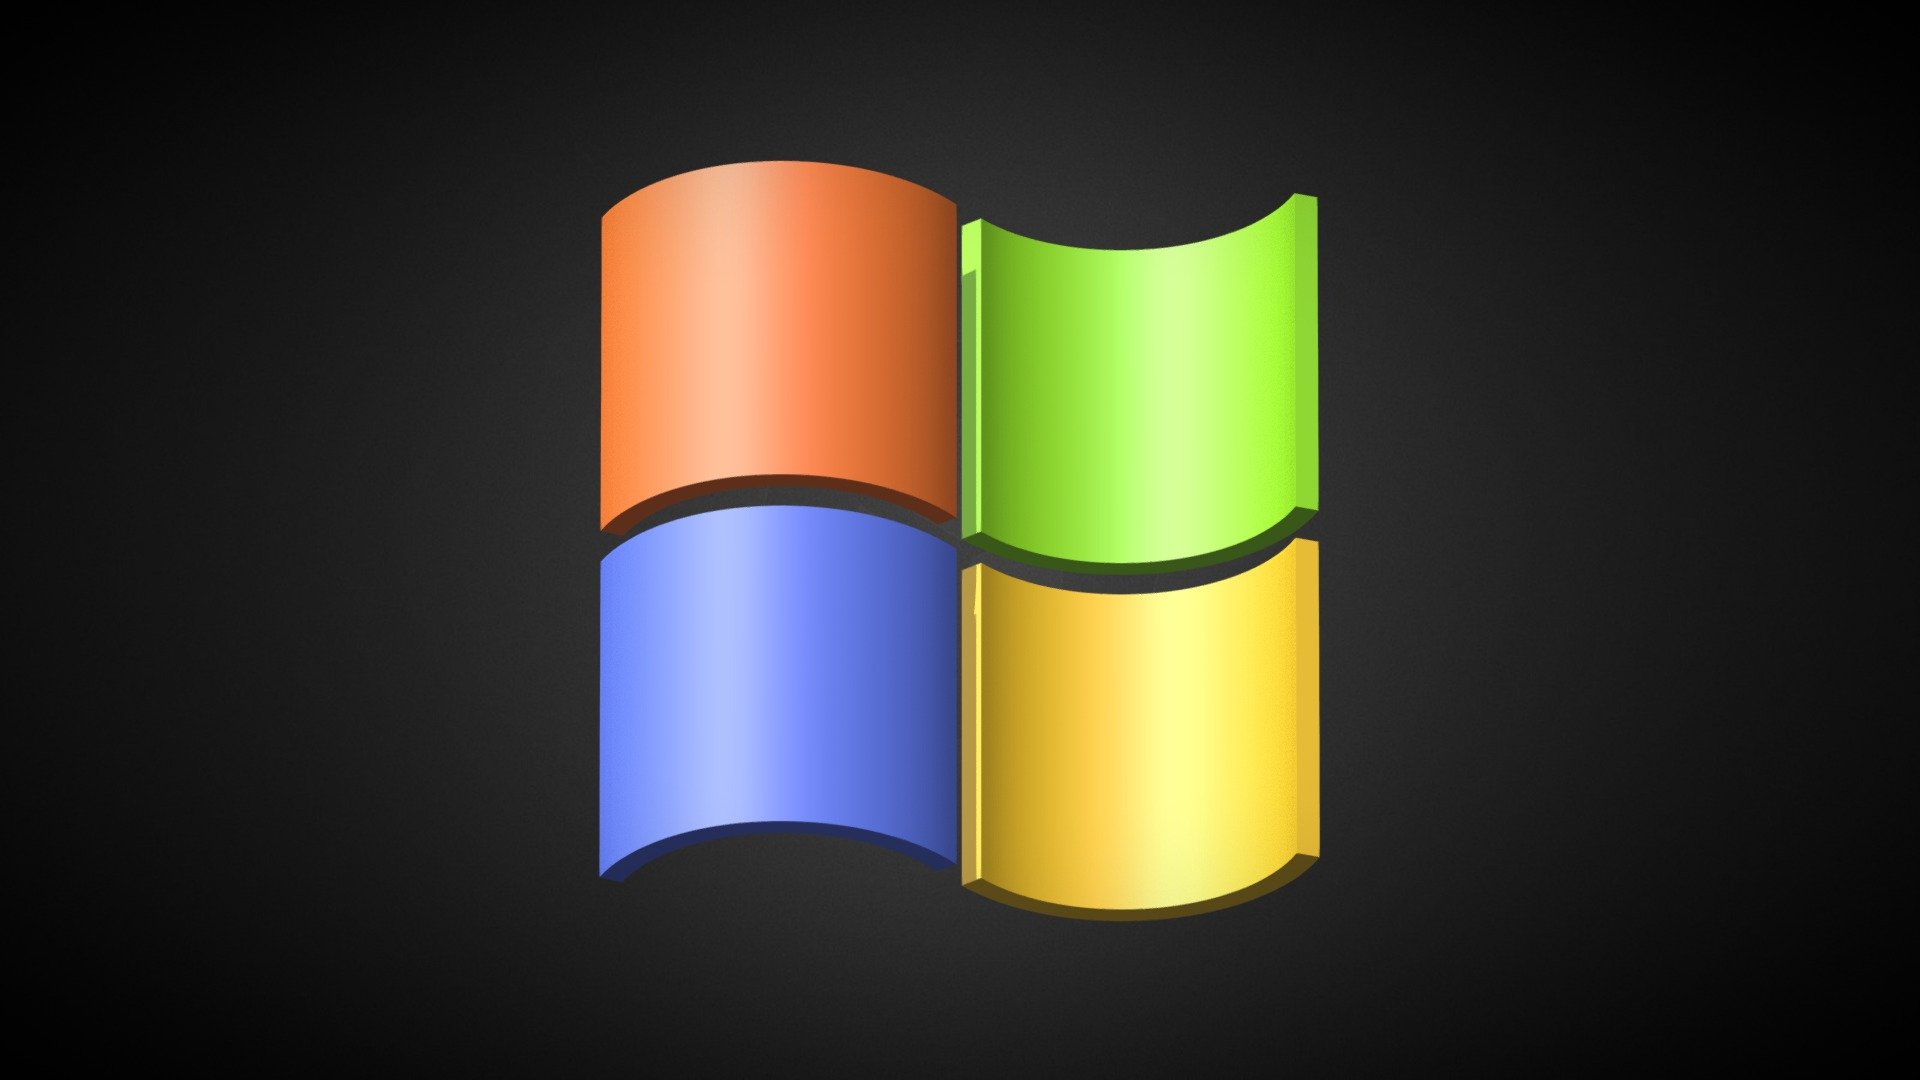 Windows 7 Logo Download Free 3d Model By Mysterypancake Mysterypancake E5177e7 Sketchfab